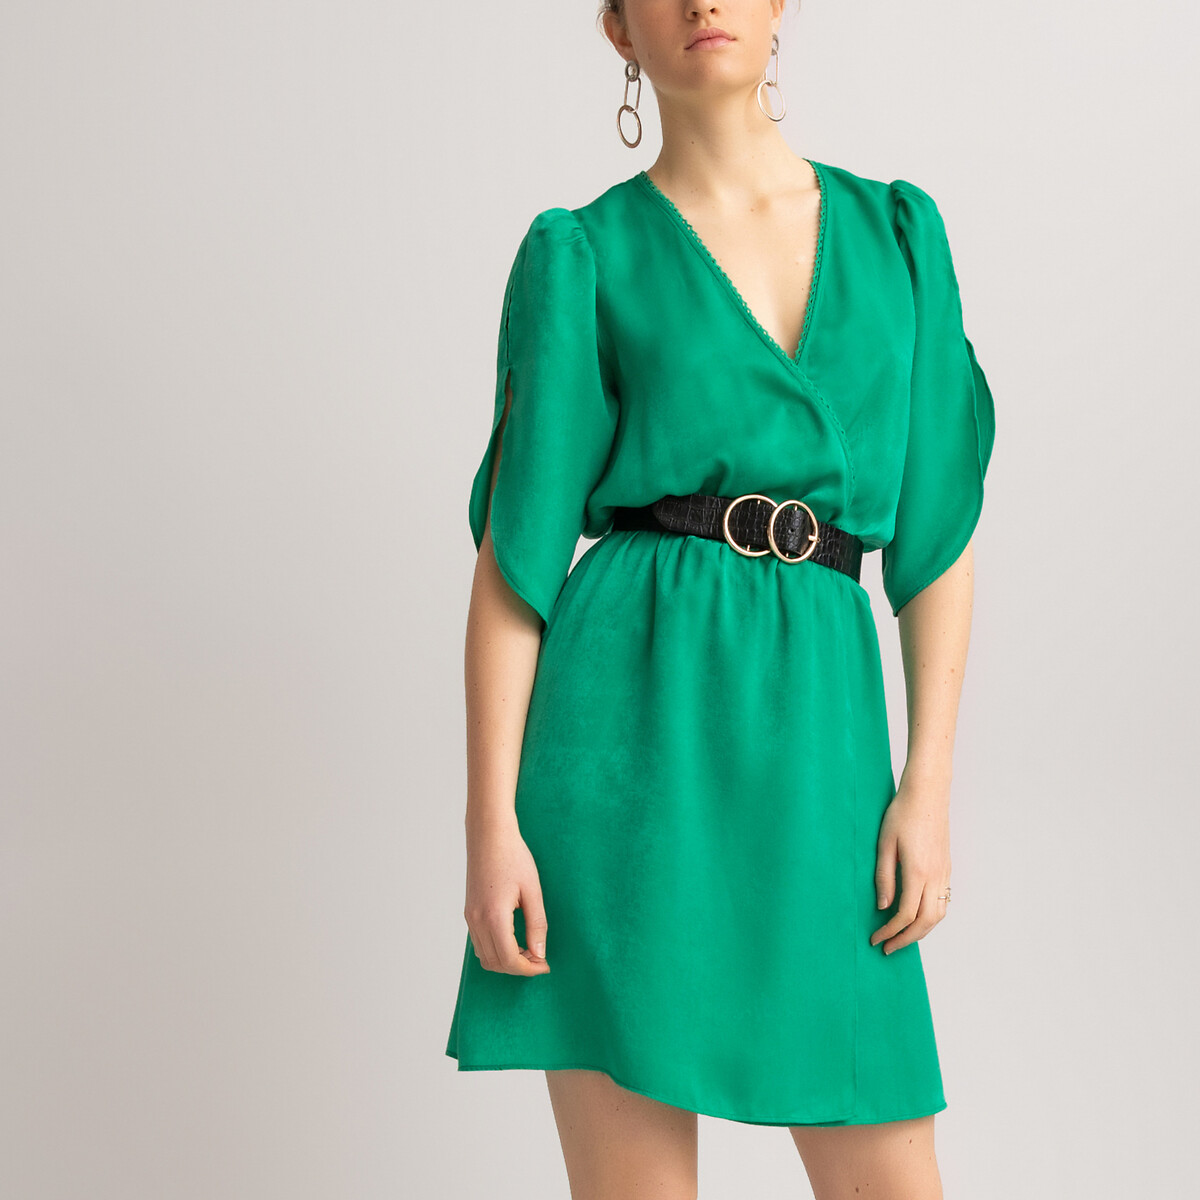 Платье LaRedoute Короткое с запахом короткие рукава 48 (FR) - 54 (RUS) зеленый, размер 48 (FR) - 54 (RUS) Короткое с запахом короткие рукава 48 (FR) - 54 (RUS) зеленый - фото 3